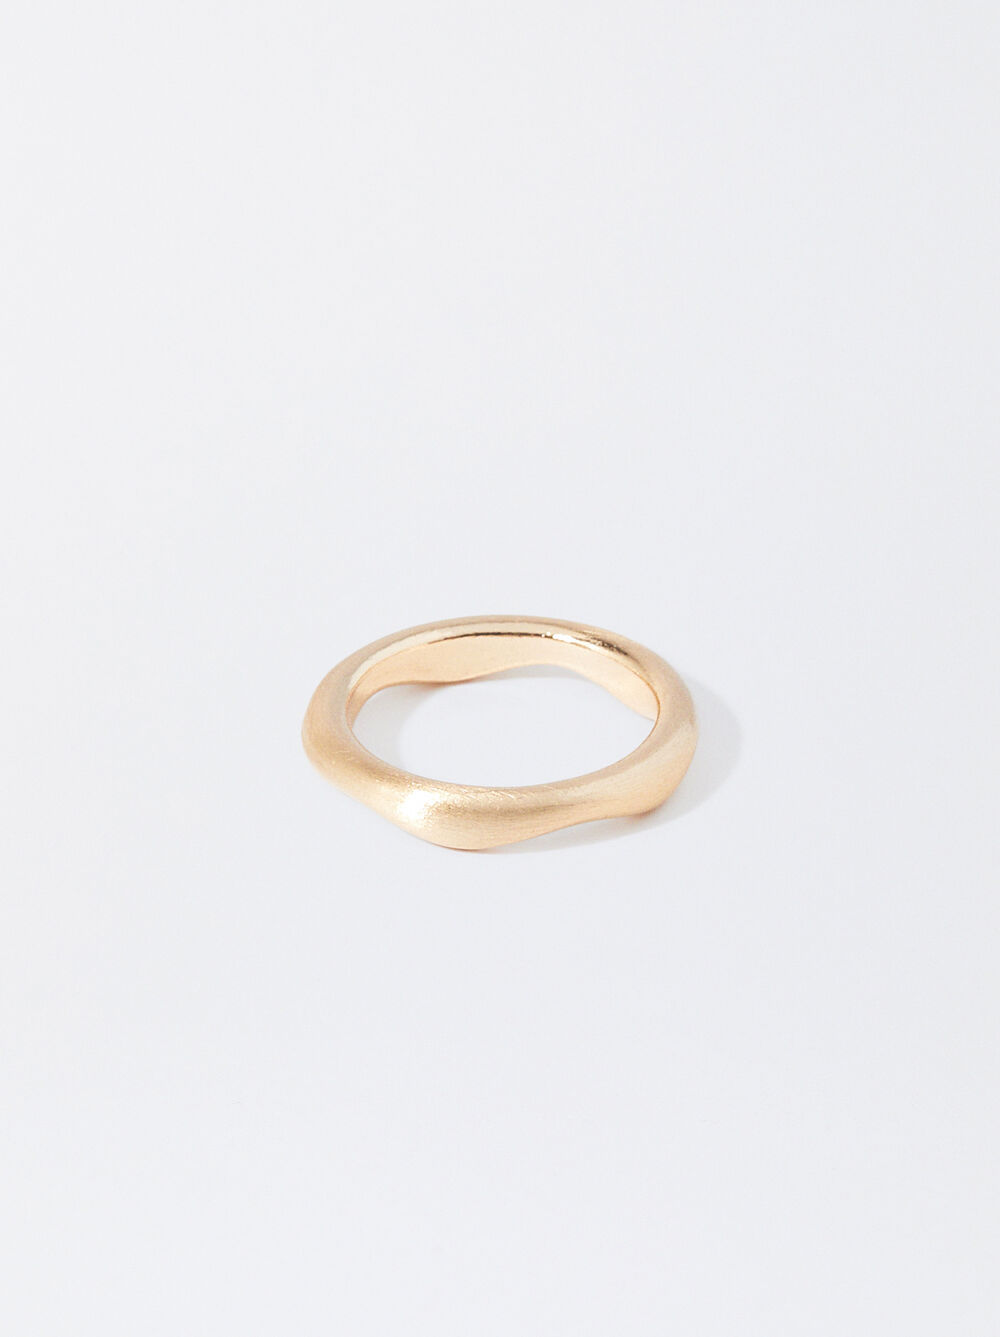 Irregular Golden Ring